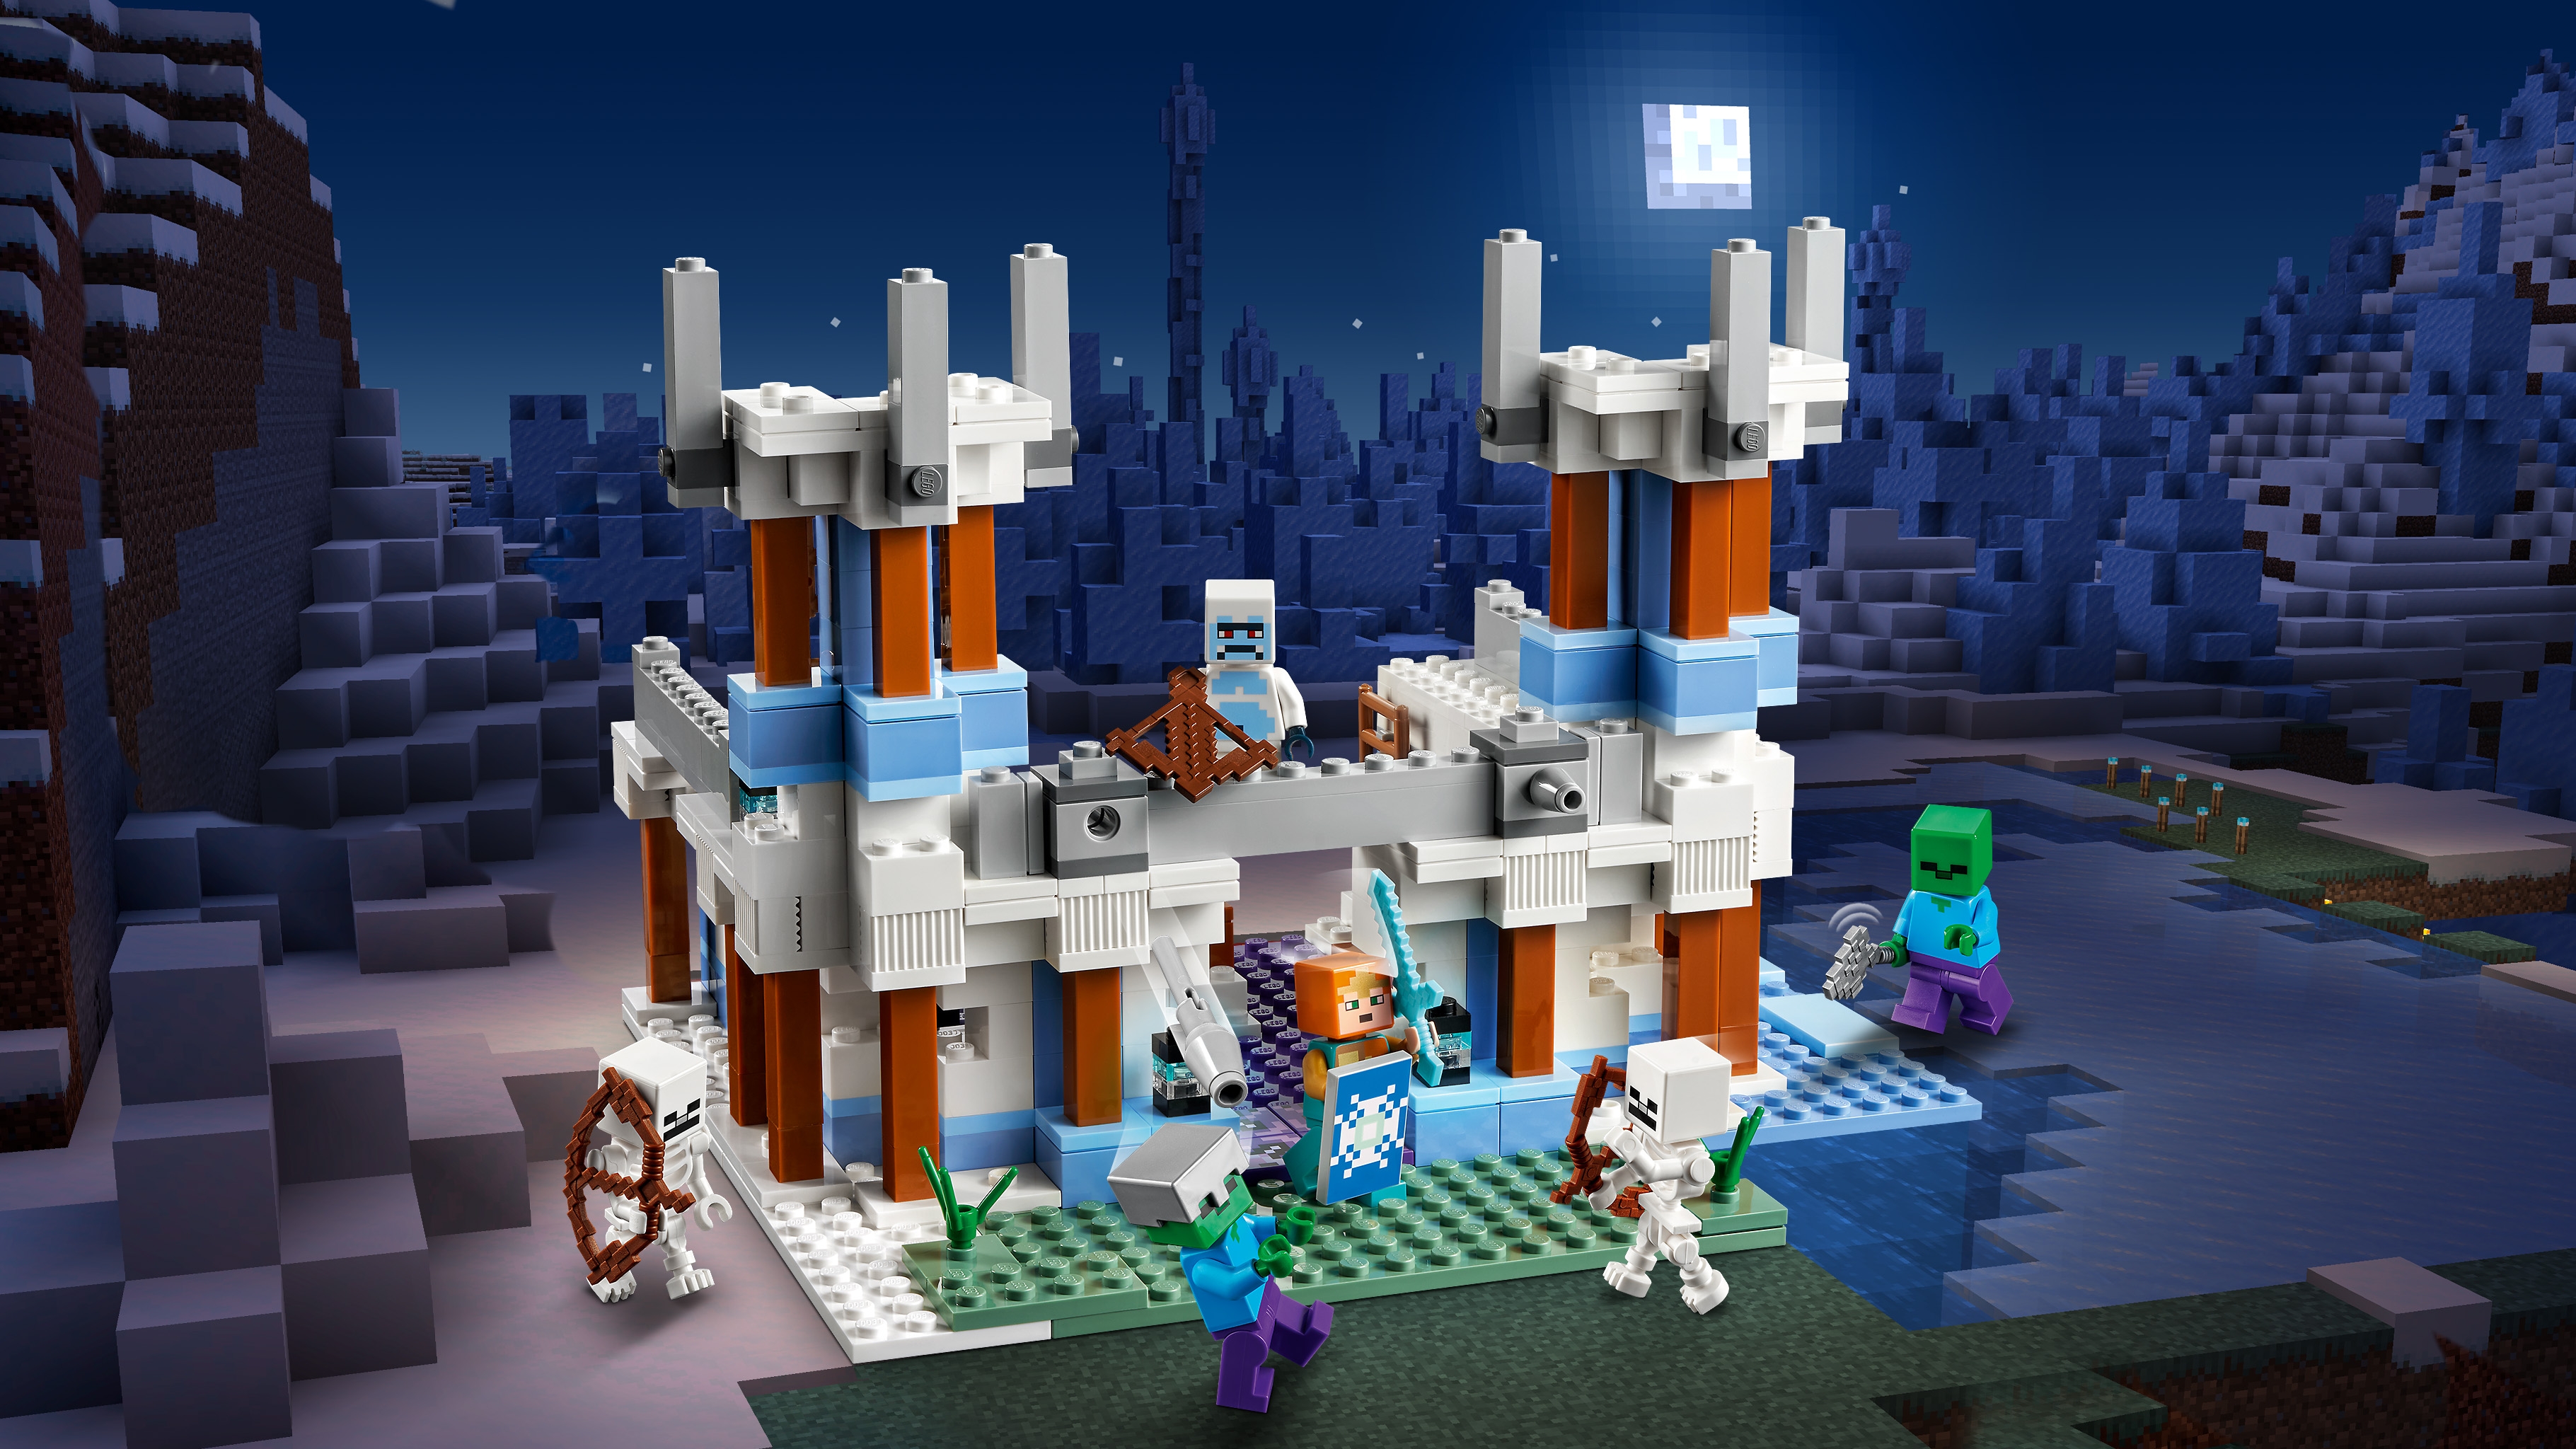 氷の城 21186 - レゴ®マインクラフト セット - LEGO.comキッズ